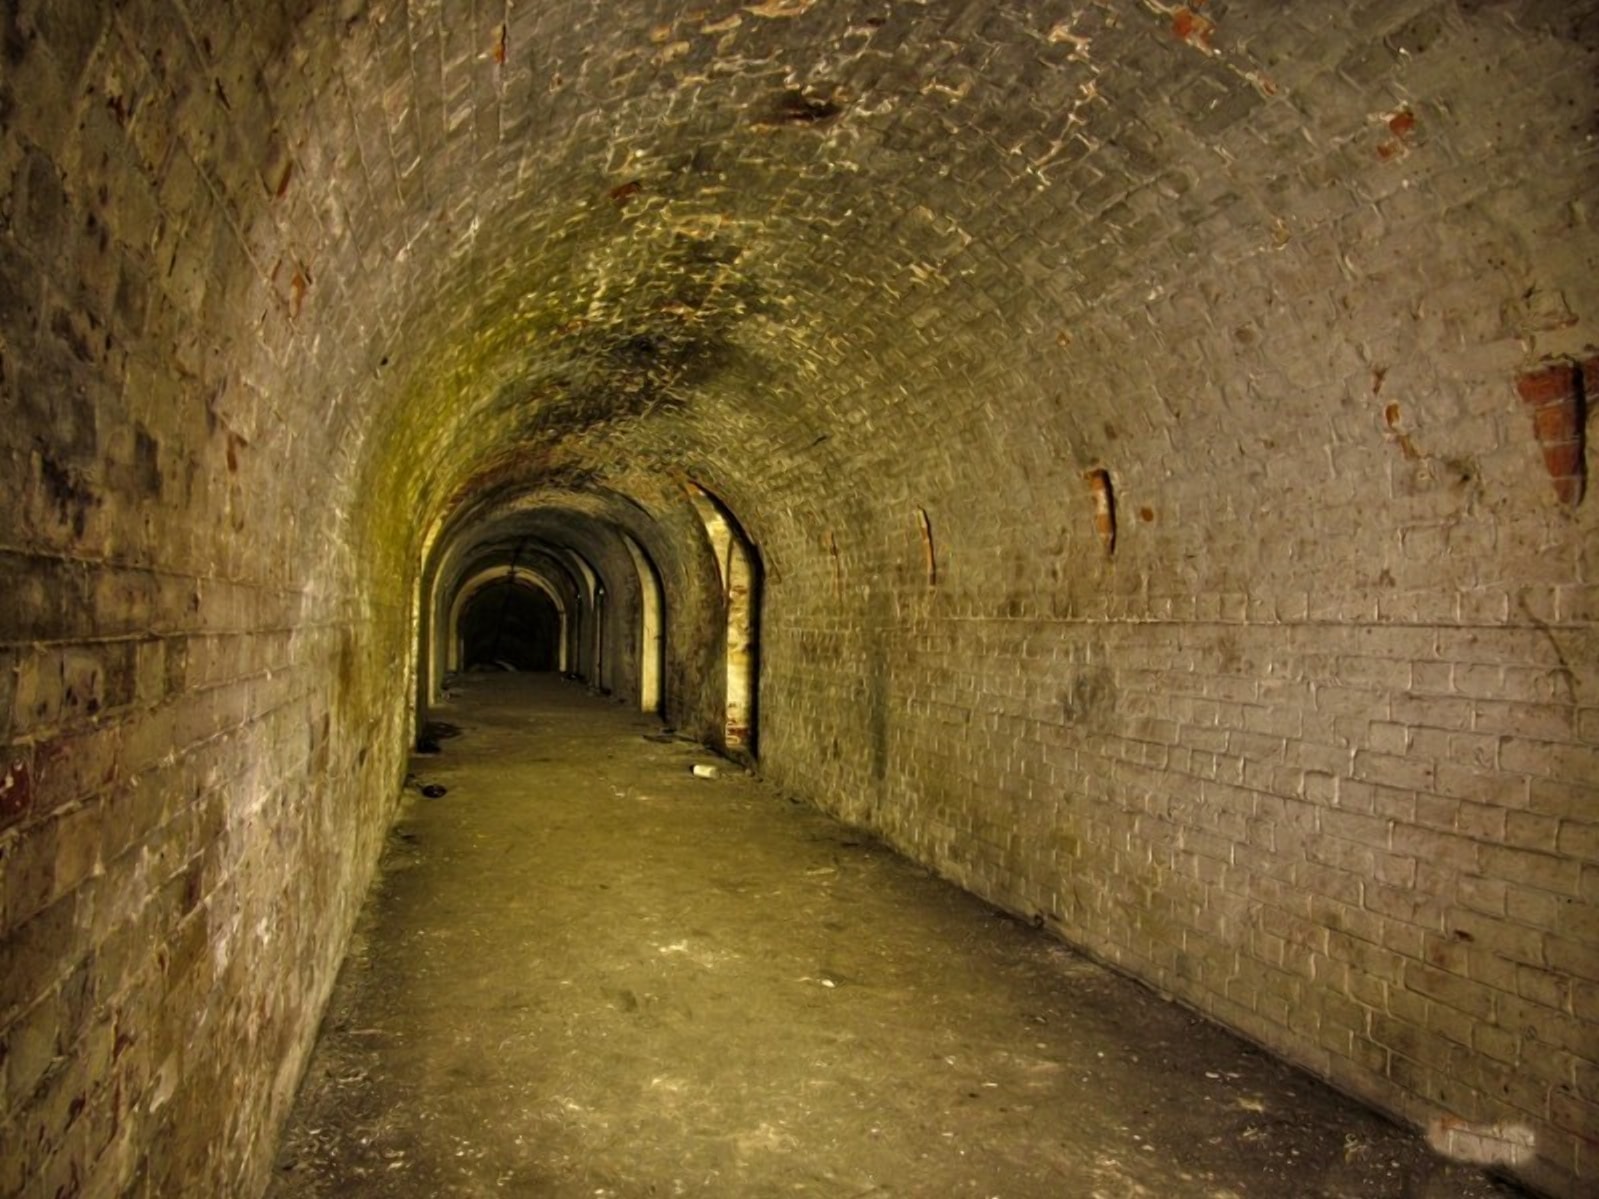 Тоннель соединящий вокзал и крепость был перед войной зысыпан